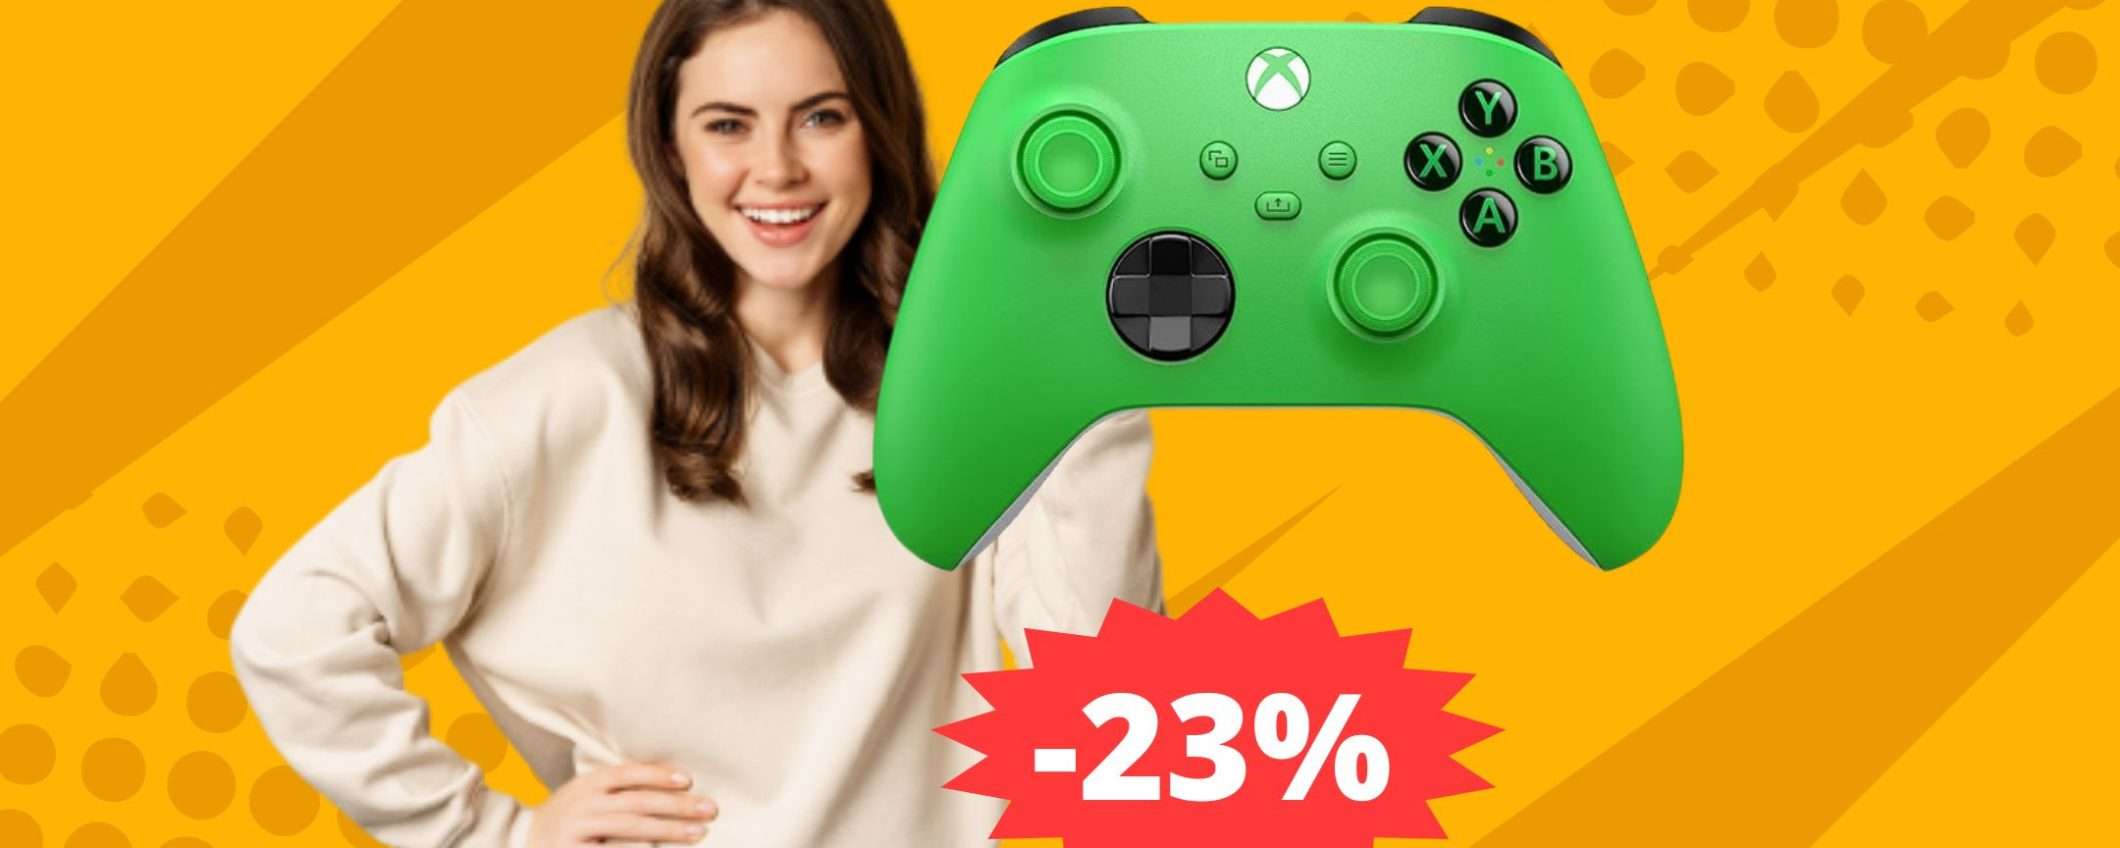 Xbox Wireless Controller Originale: SUPER sconto del 23%